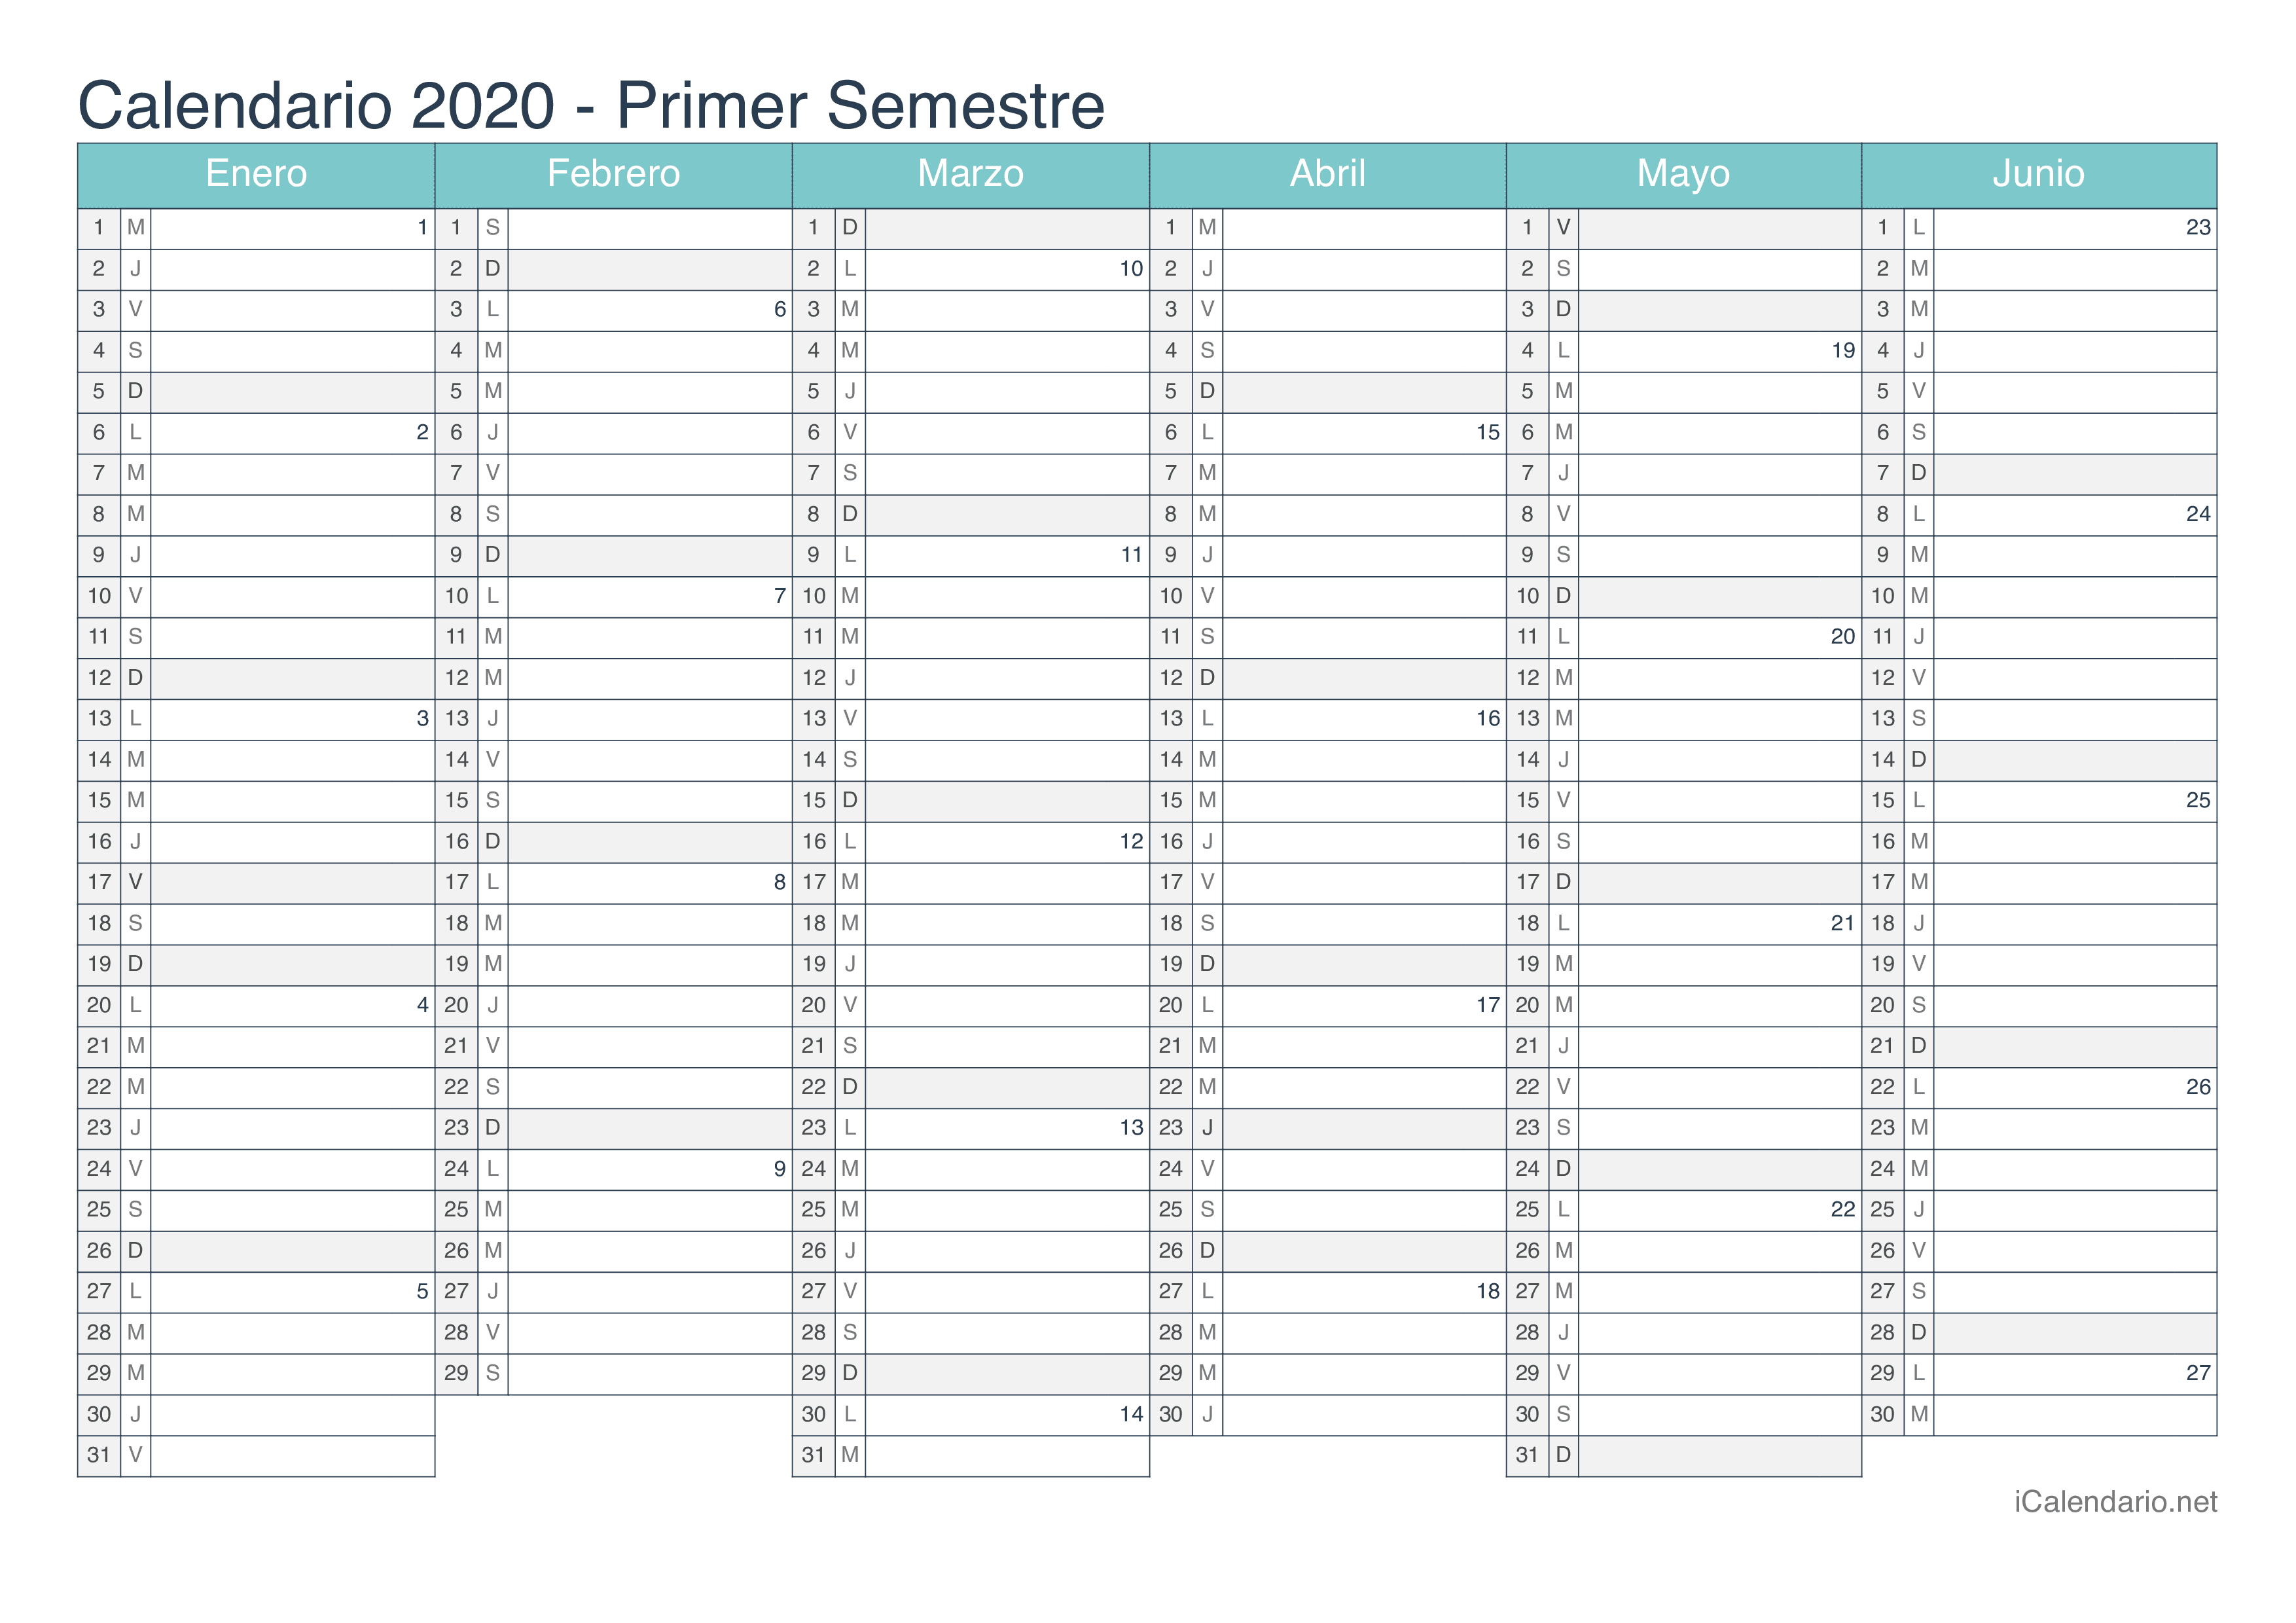 Calendario por semestre com números da semana 2020 - Turquesa